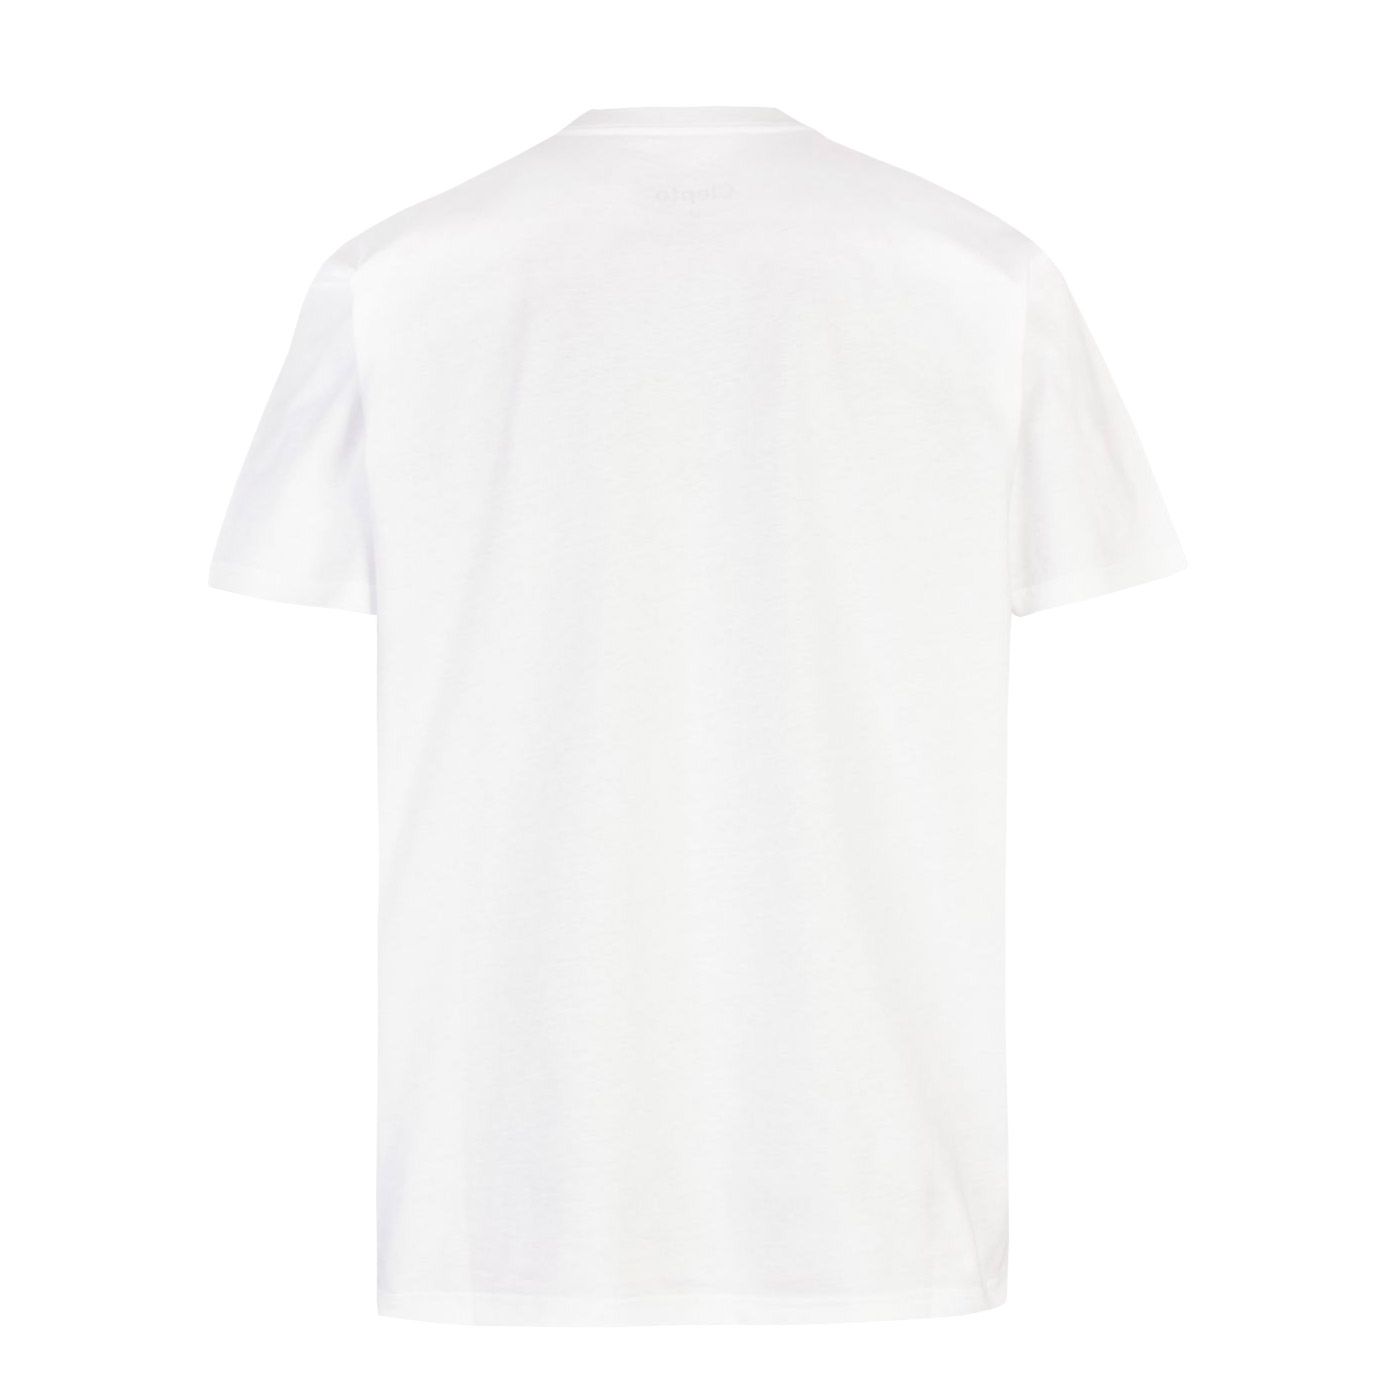 Cleptomanicx T-Shirt HHCX91 (white)